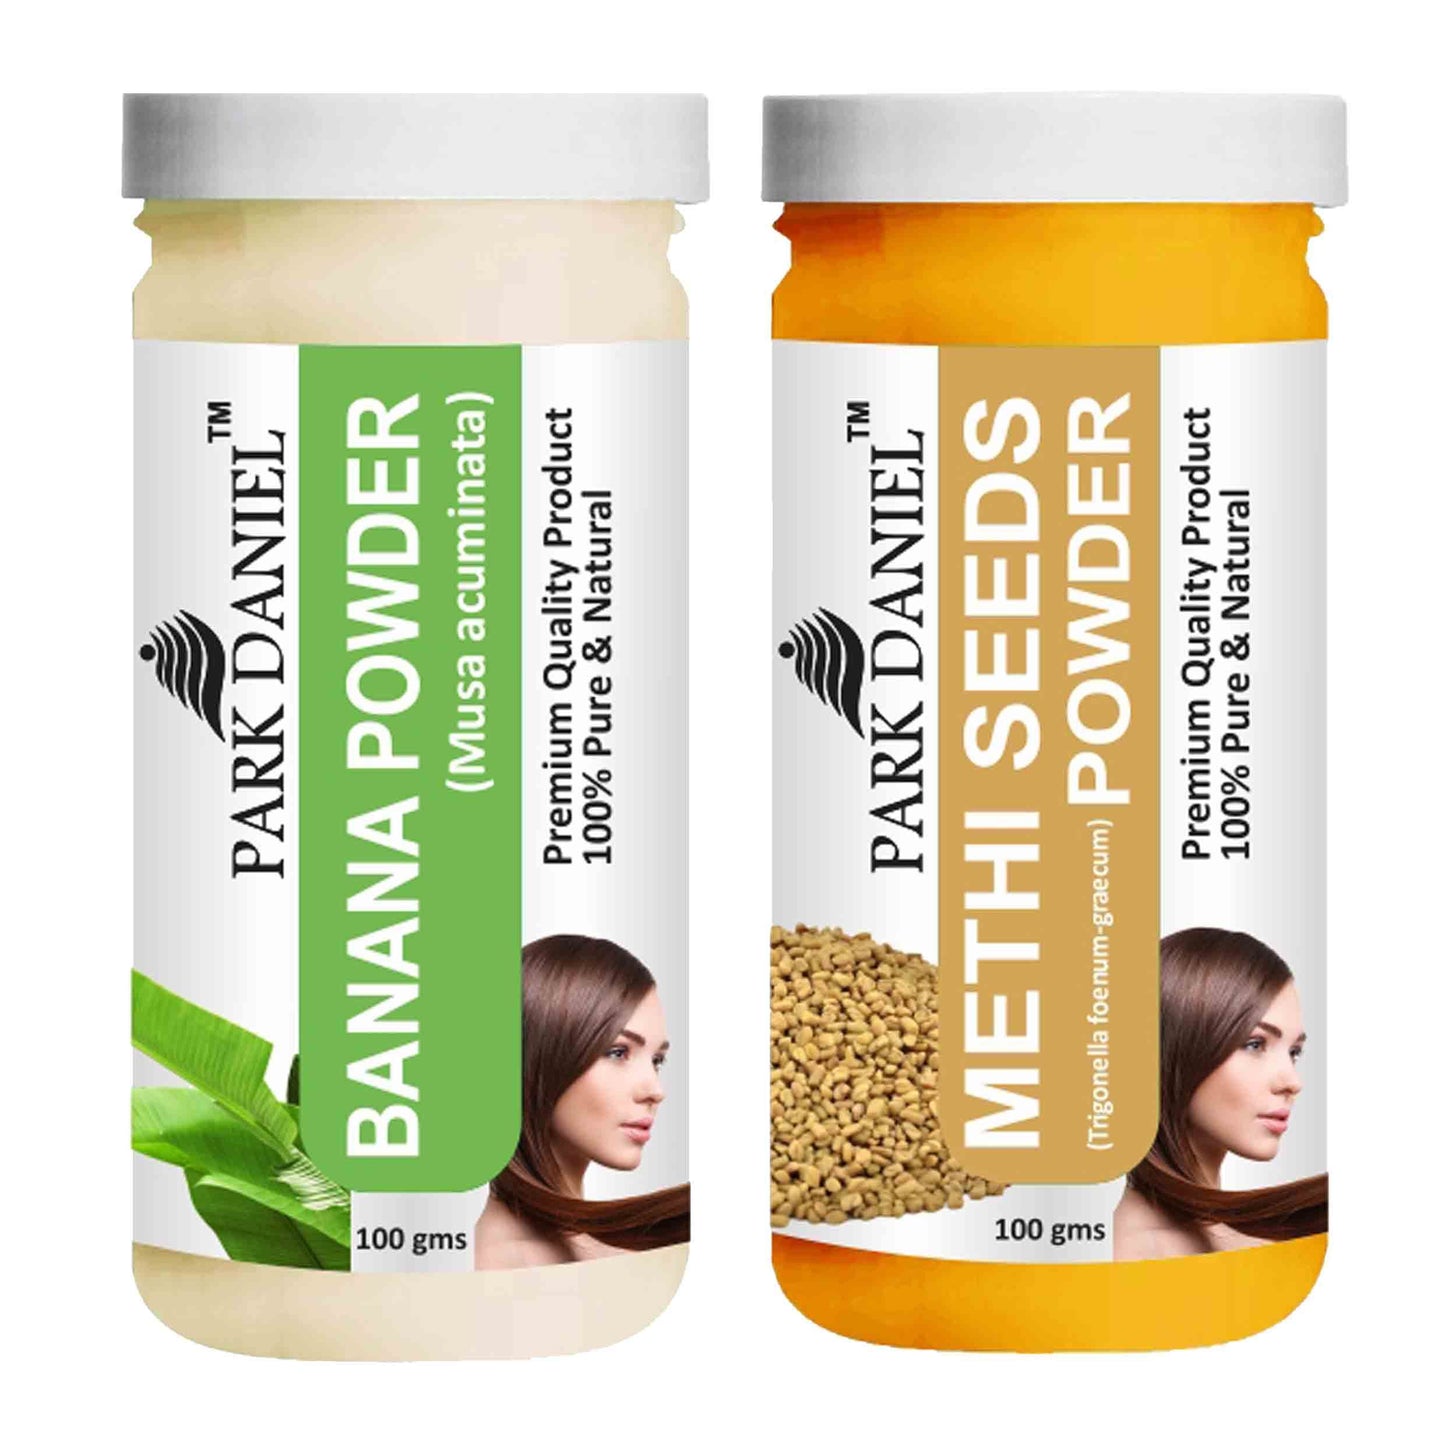 Park Daniel Banana Powder & Methi Powder Combo pack of 2 Jars of 100 gms(200 gms)